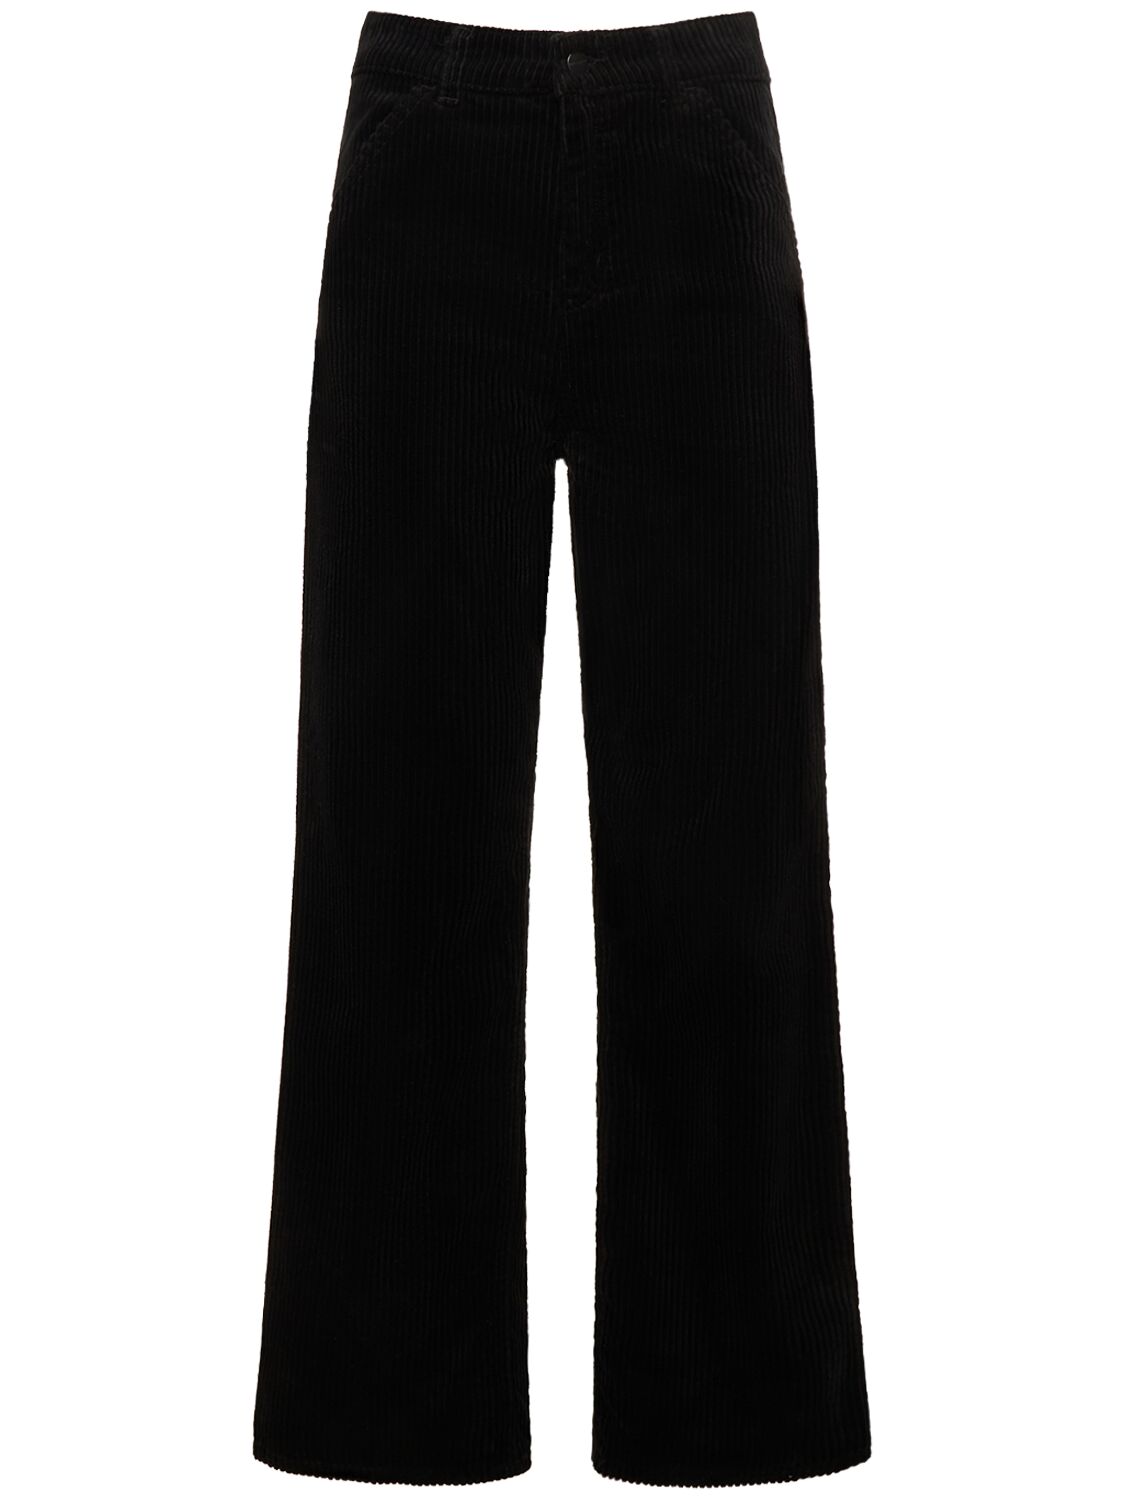 Carhartt Simple Corduroy Pants In Black